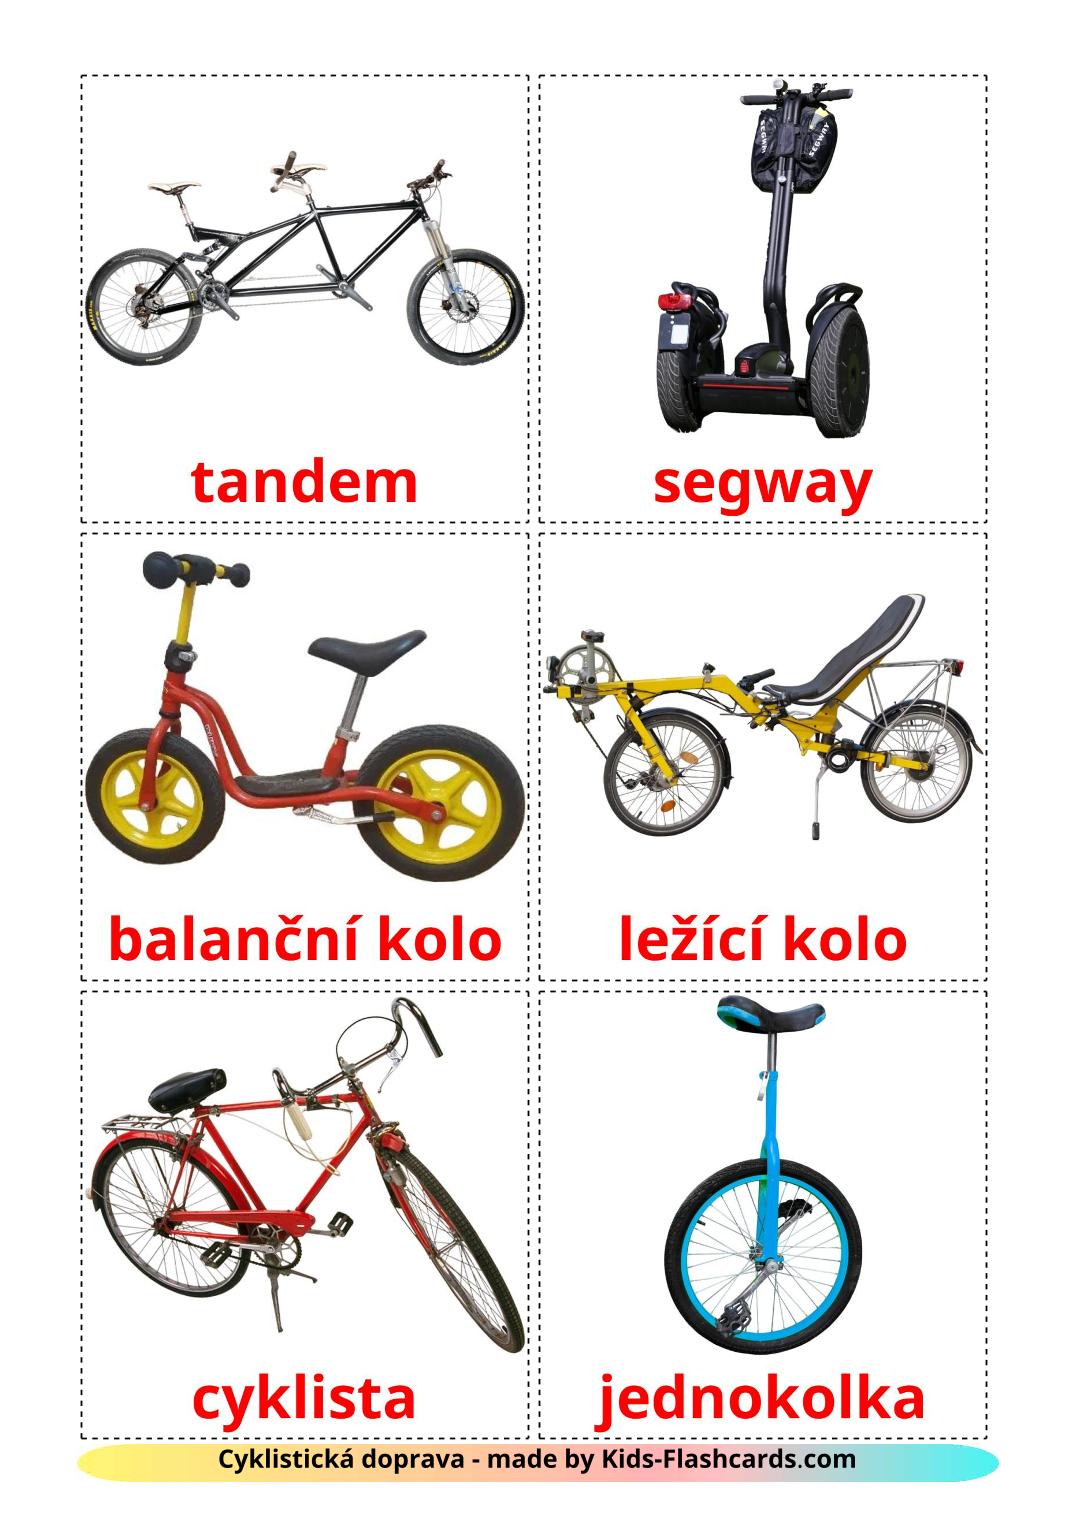 Bicycle transport - 16 gratis printbare czeche kaarten